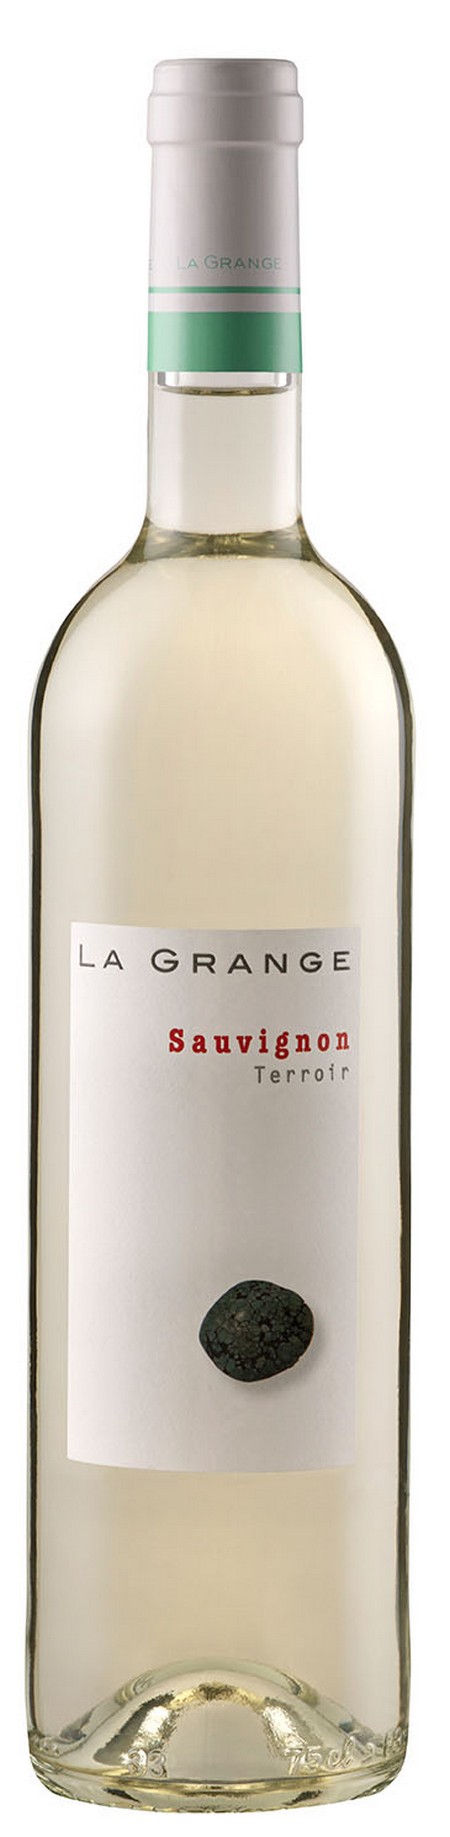 la-grangeterroir-sauvignon-igp-pays-d-oc-2013